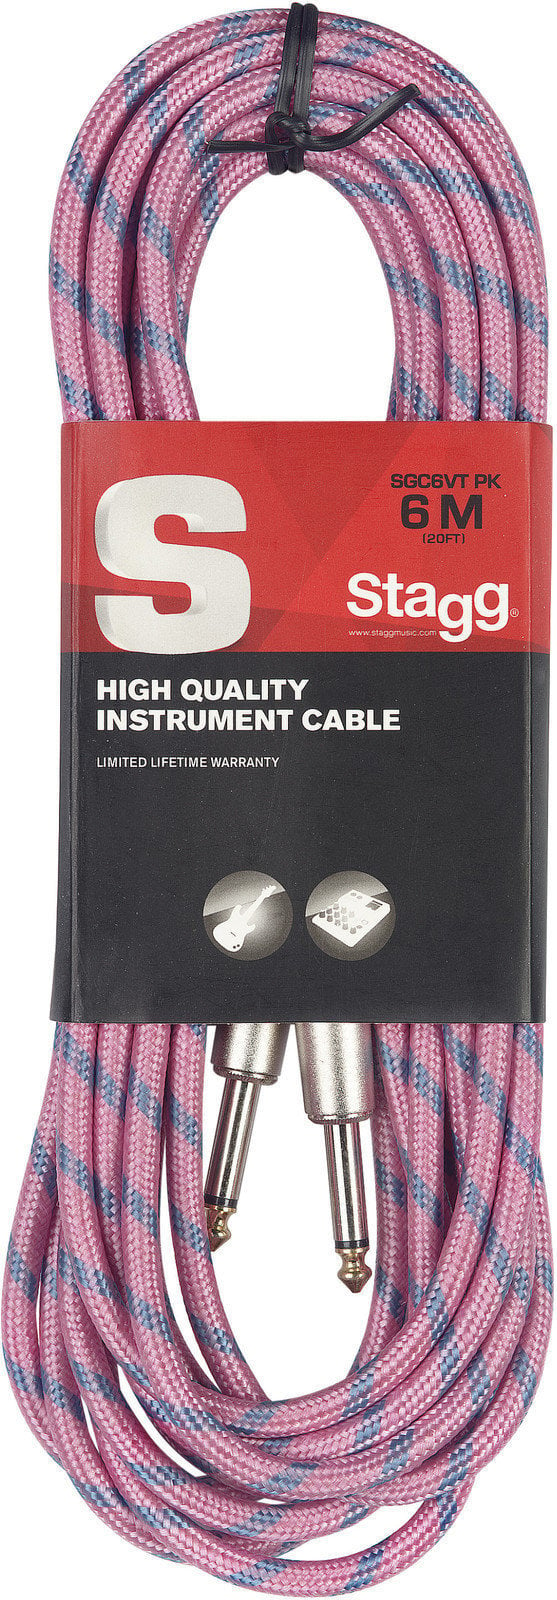 Instrument kabel Stagg SGC6VT Lyserød 6 m Lige - Lige